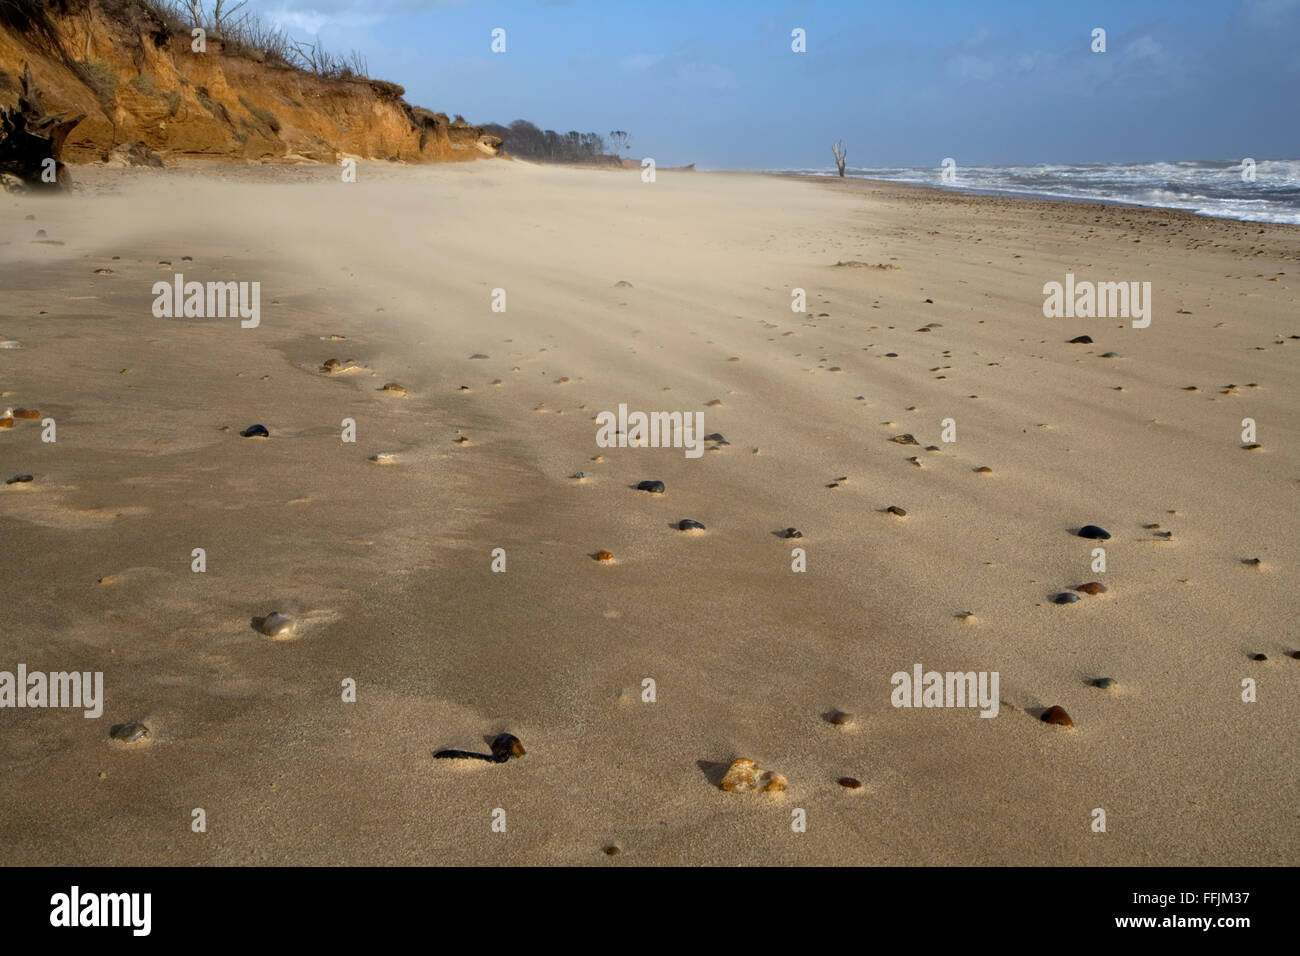 Le sable sur la plage, avec des cailloux Covehithe partiellement couvert dans du sable et falaises en ruine à l'arrière-plan, Covehithe Banque D'Images